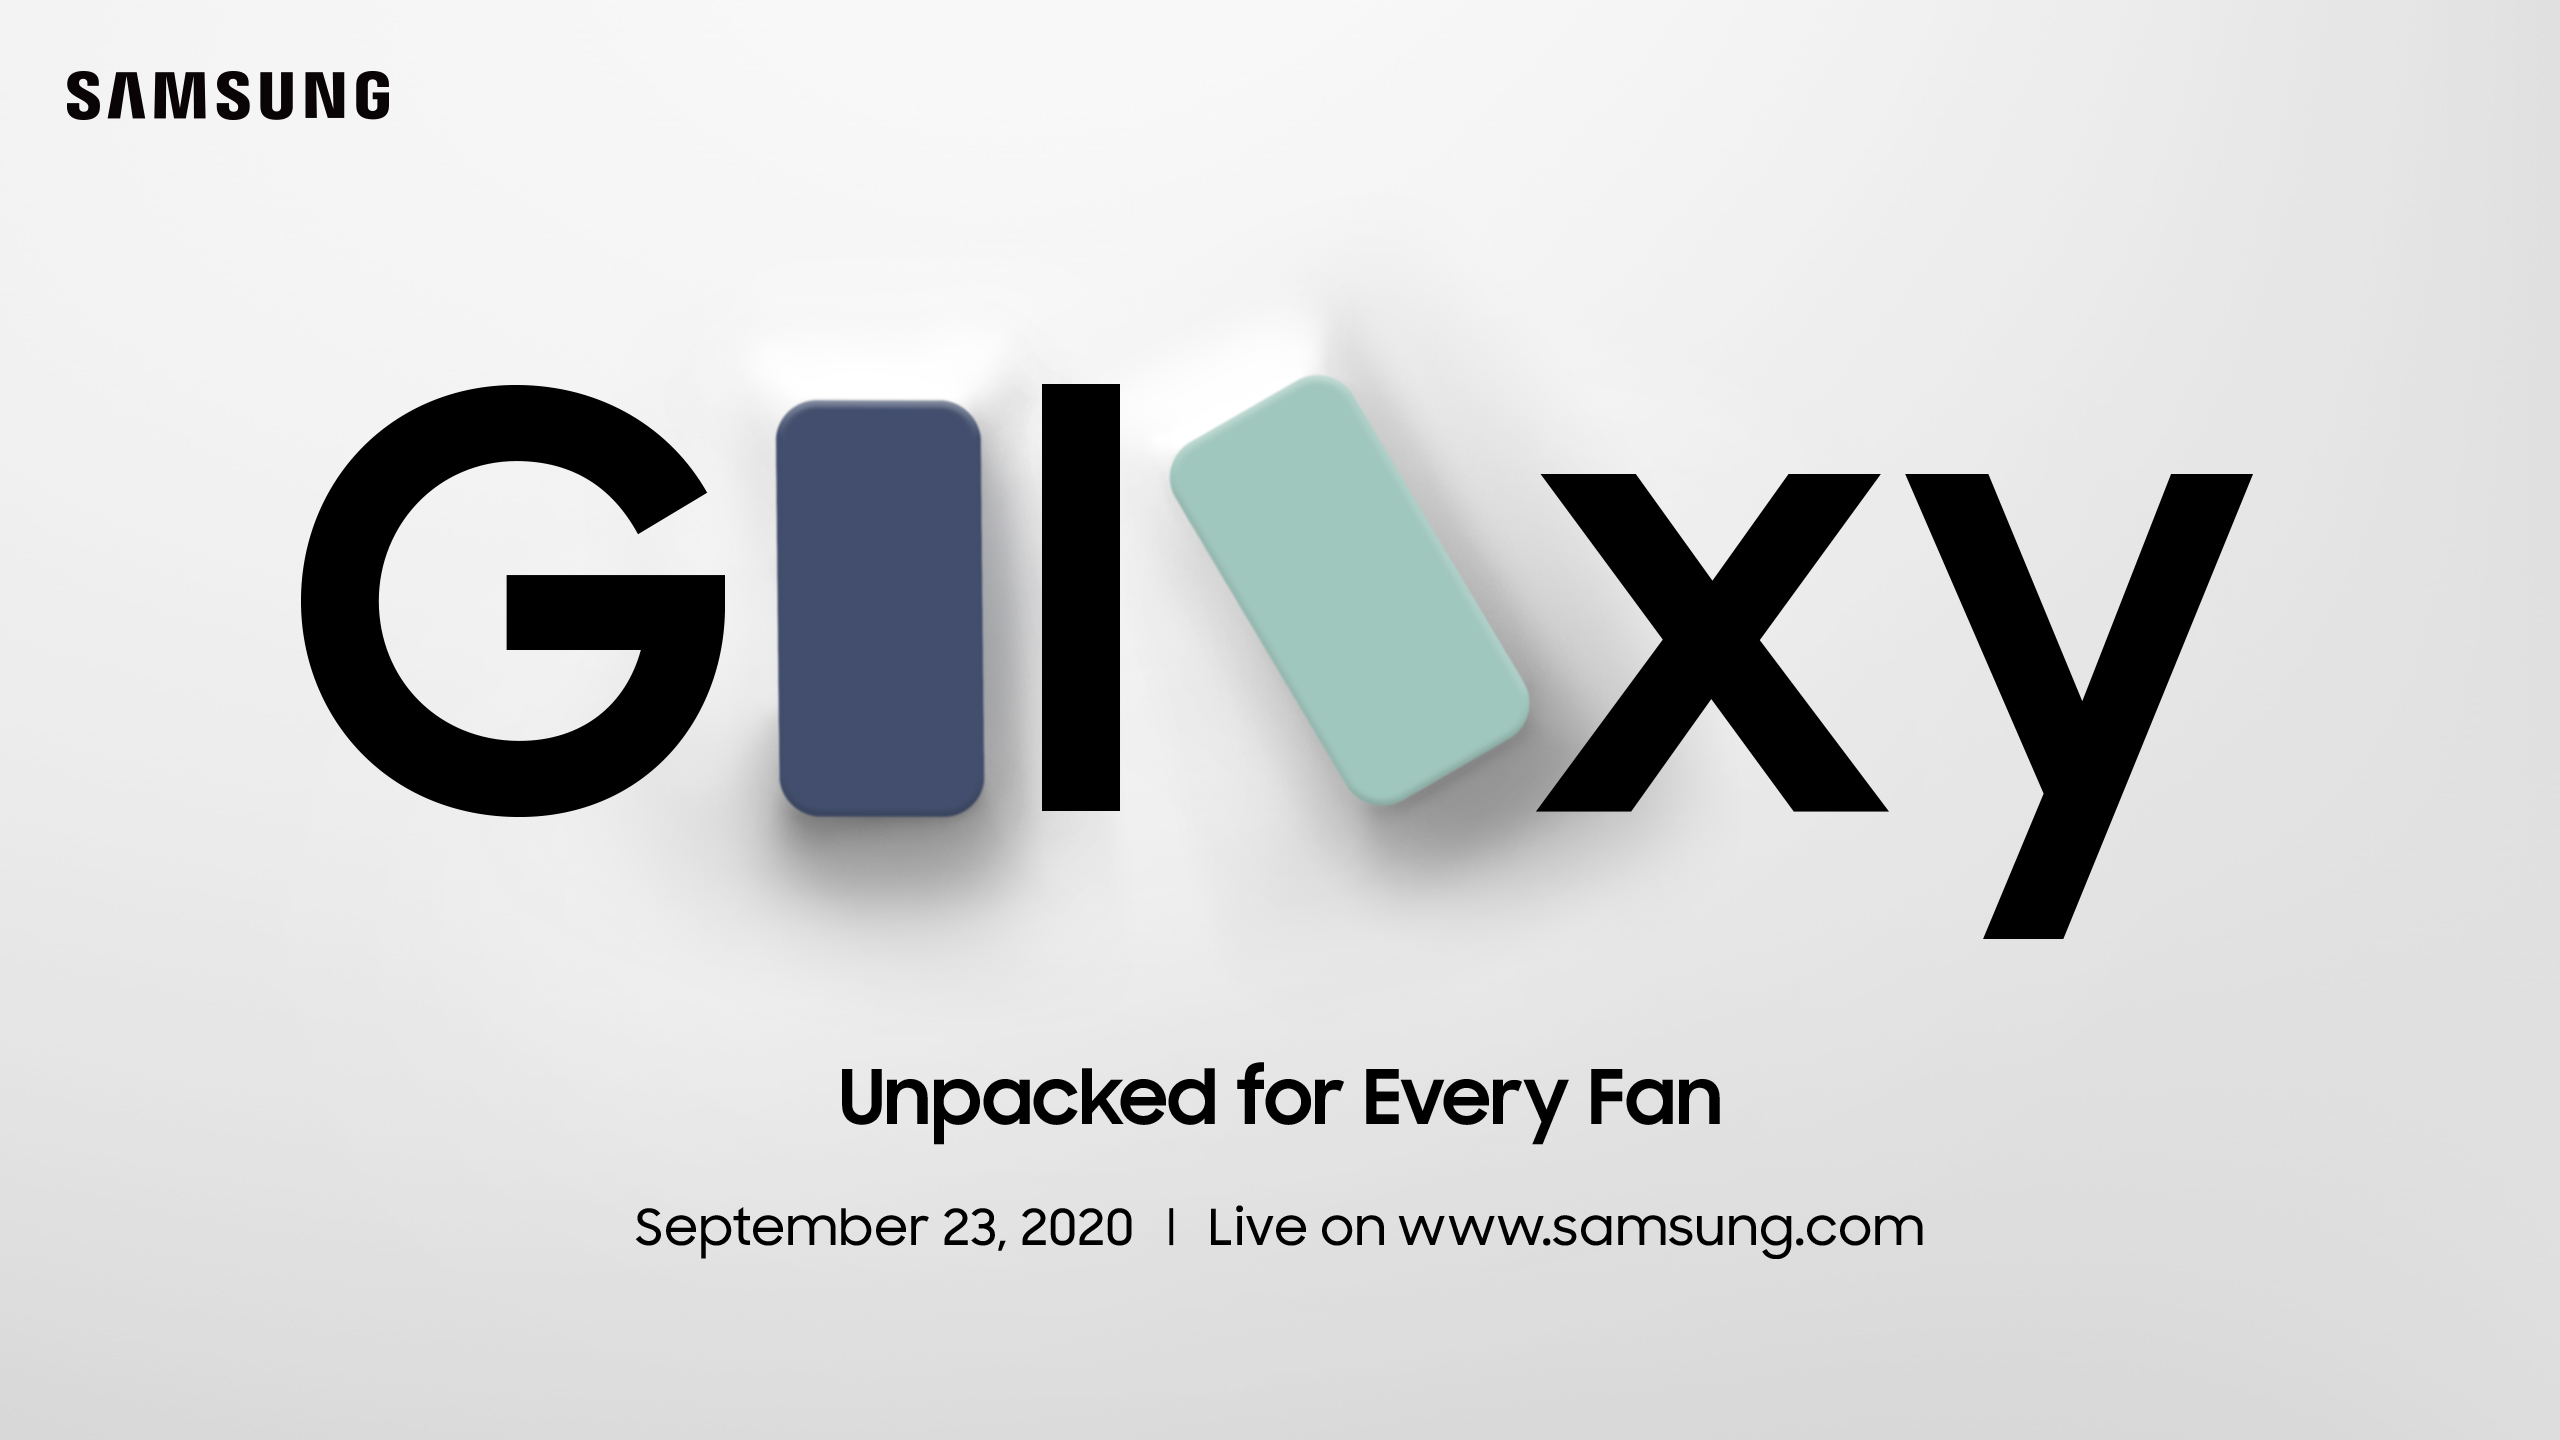 พบกับ Galaxy Unpacked for Every Fan งานไลฟ์เปิดตัวสมาร์ทโฟนล่าสุดจากซัมซุง วันพุธที่ 23 ก.ย.นี้ 21.00 น.